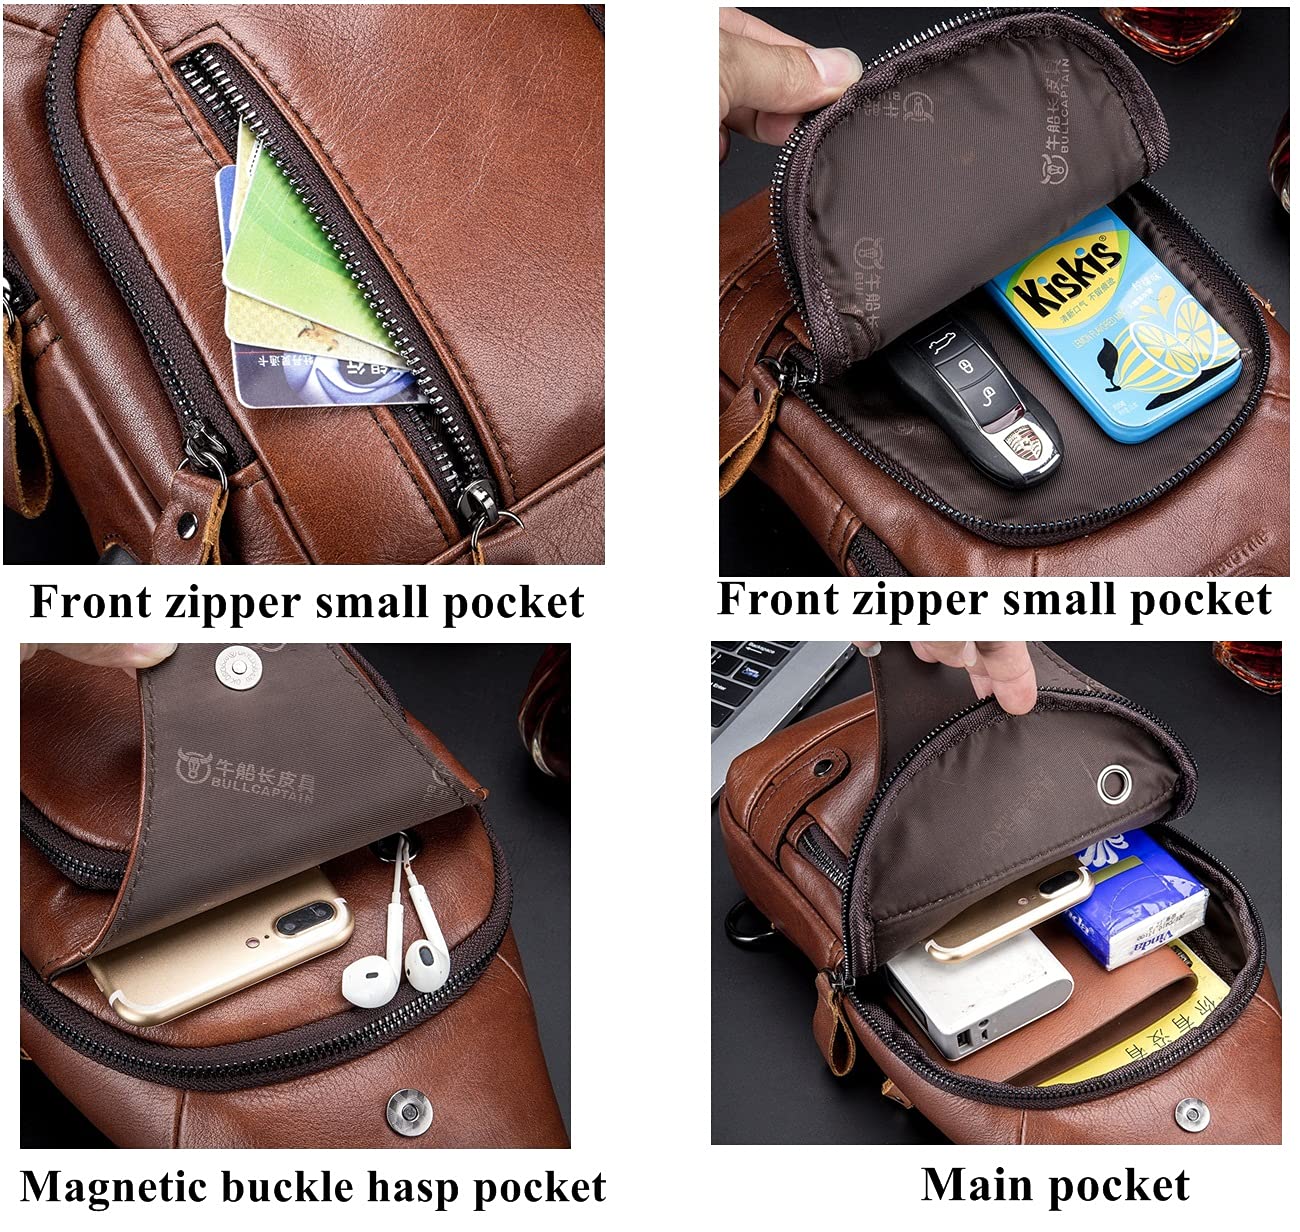 BULLCAPTAIN Men Crossbody Bag with USB Charging Port Genuine Leather Shoulder Sling Chest Bag Travel Hiking Backpack (Brown)